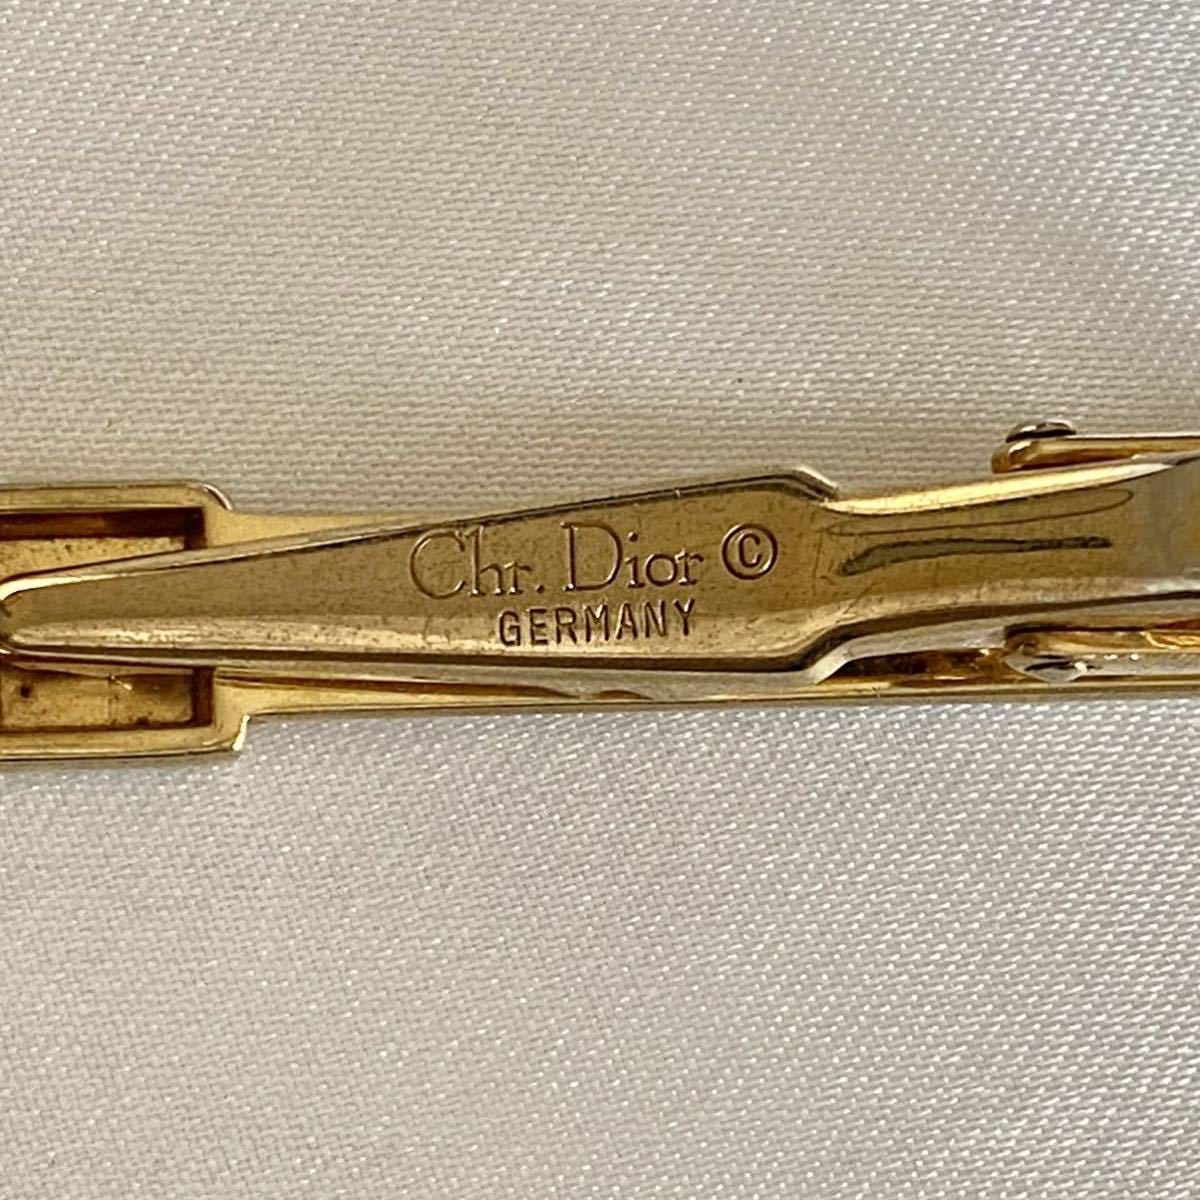 Christian Dior GERMANY ディオール ネクタイピン タイピン シルバー×ゴールド ヴィンテージ ブランド アクセサリー  Chr.Dior ドイツ 中古